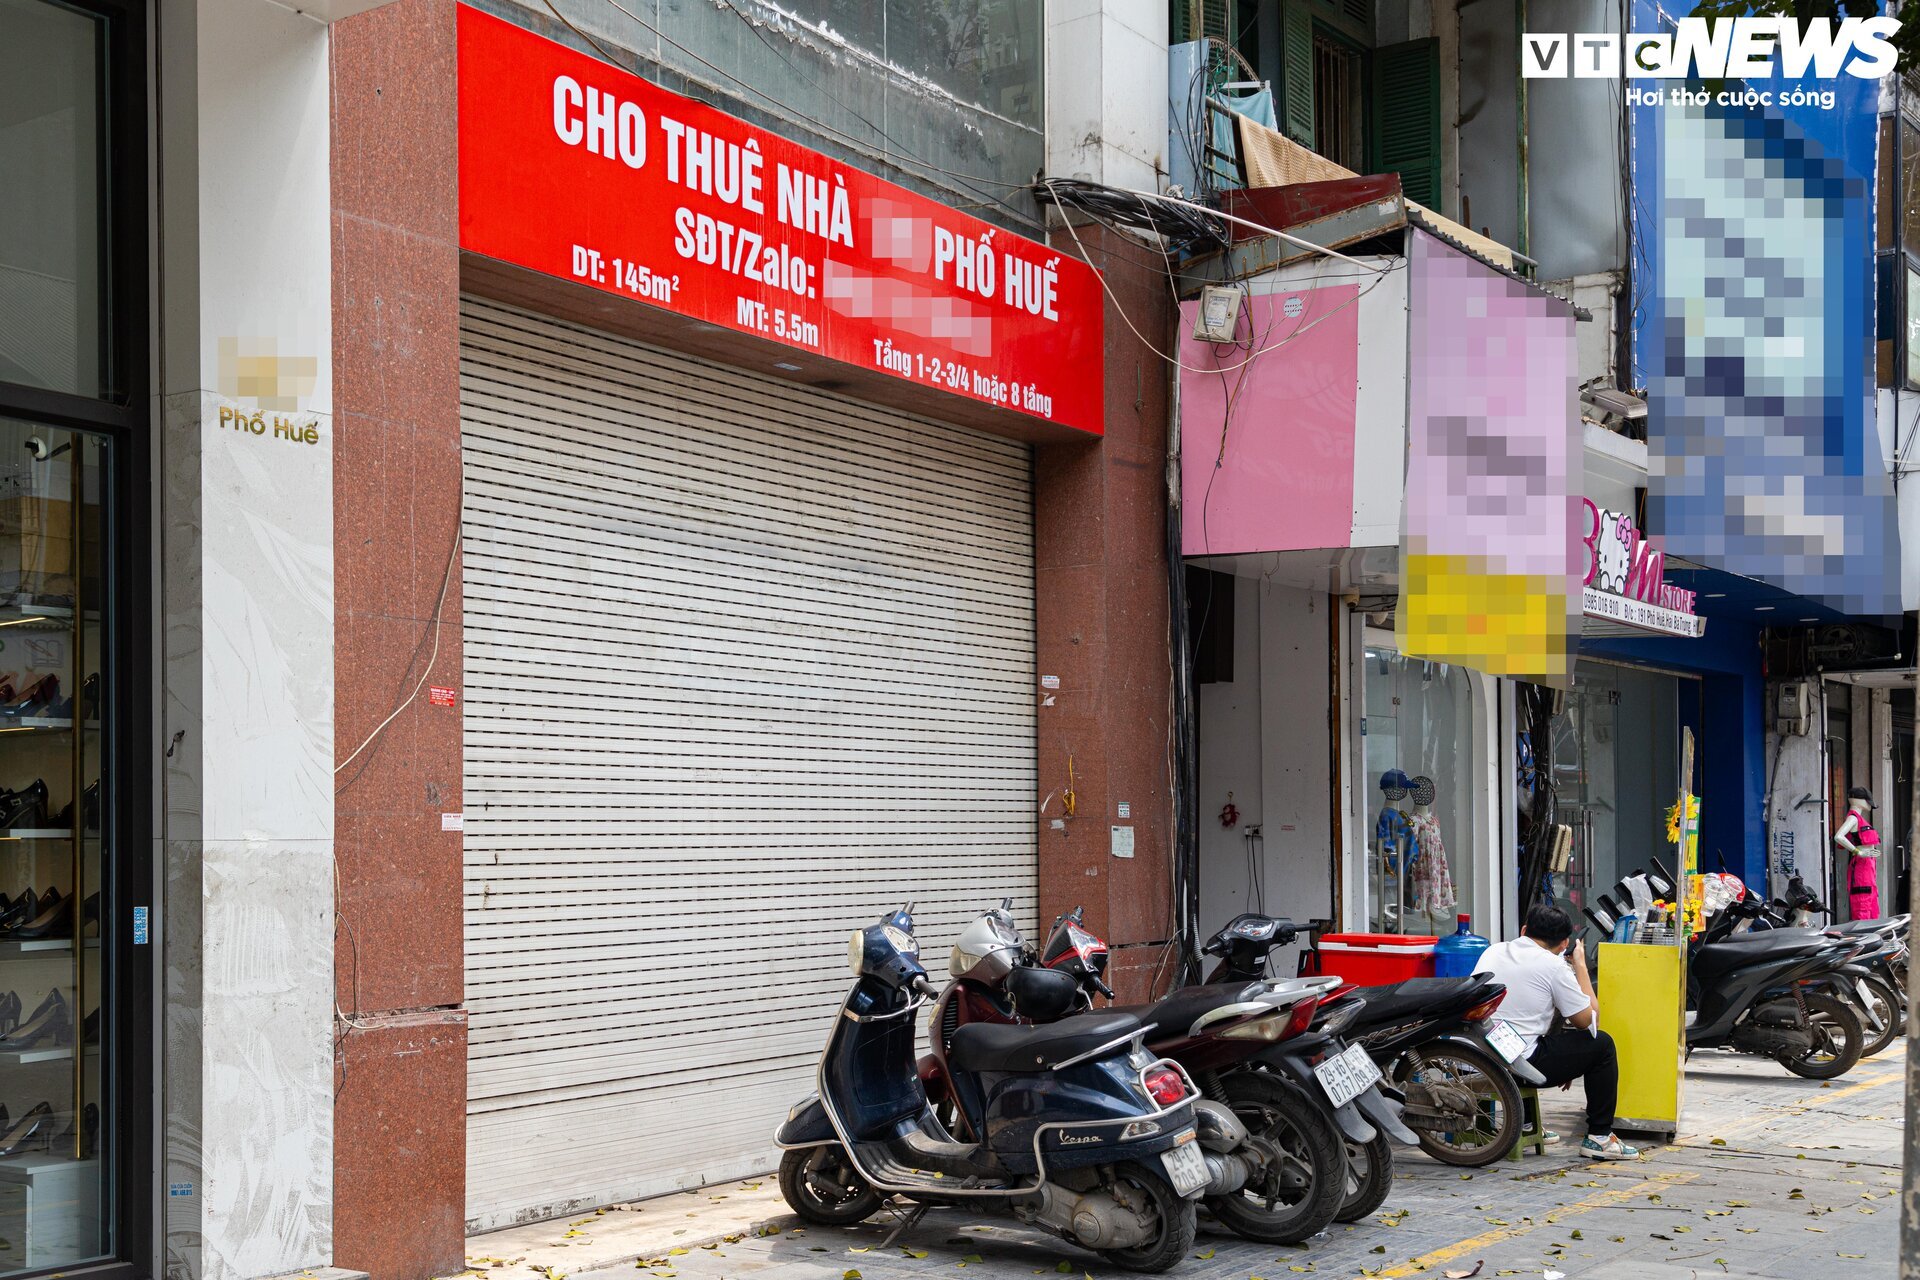 Hàng chục cửa hàng trên đất vàng phố Huế, Hà Nội đóng cửa, treo biển cho thuê - Ảnh 14.